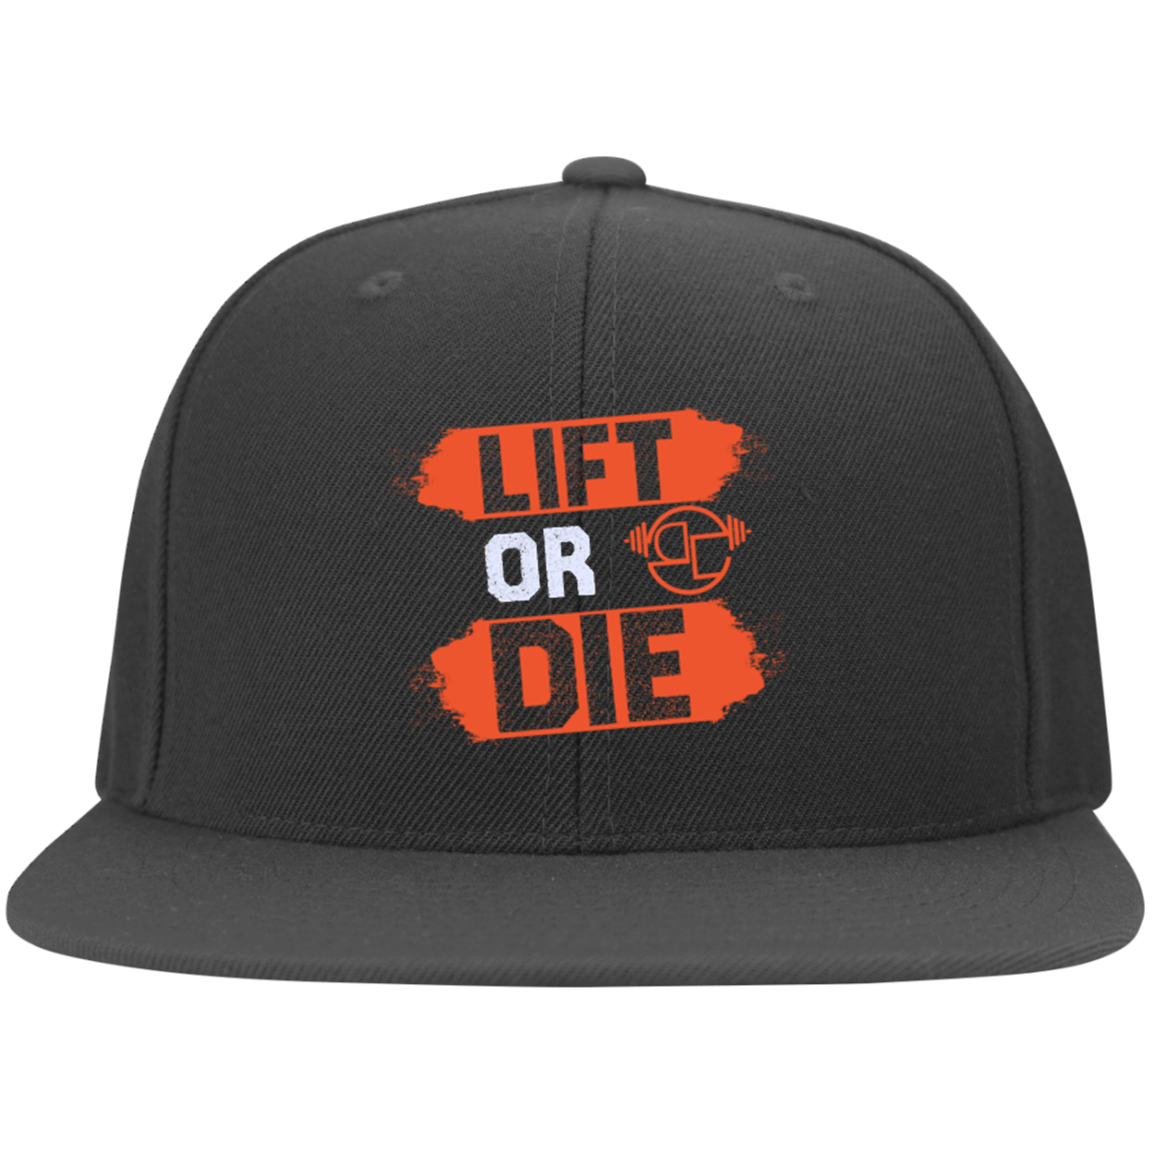 Lift or Die Flex fit cap